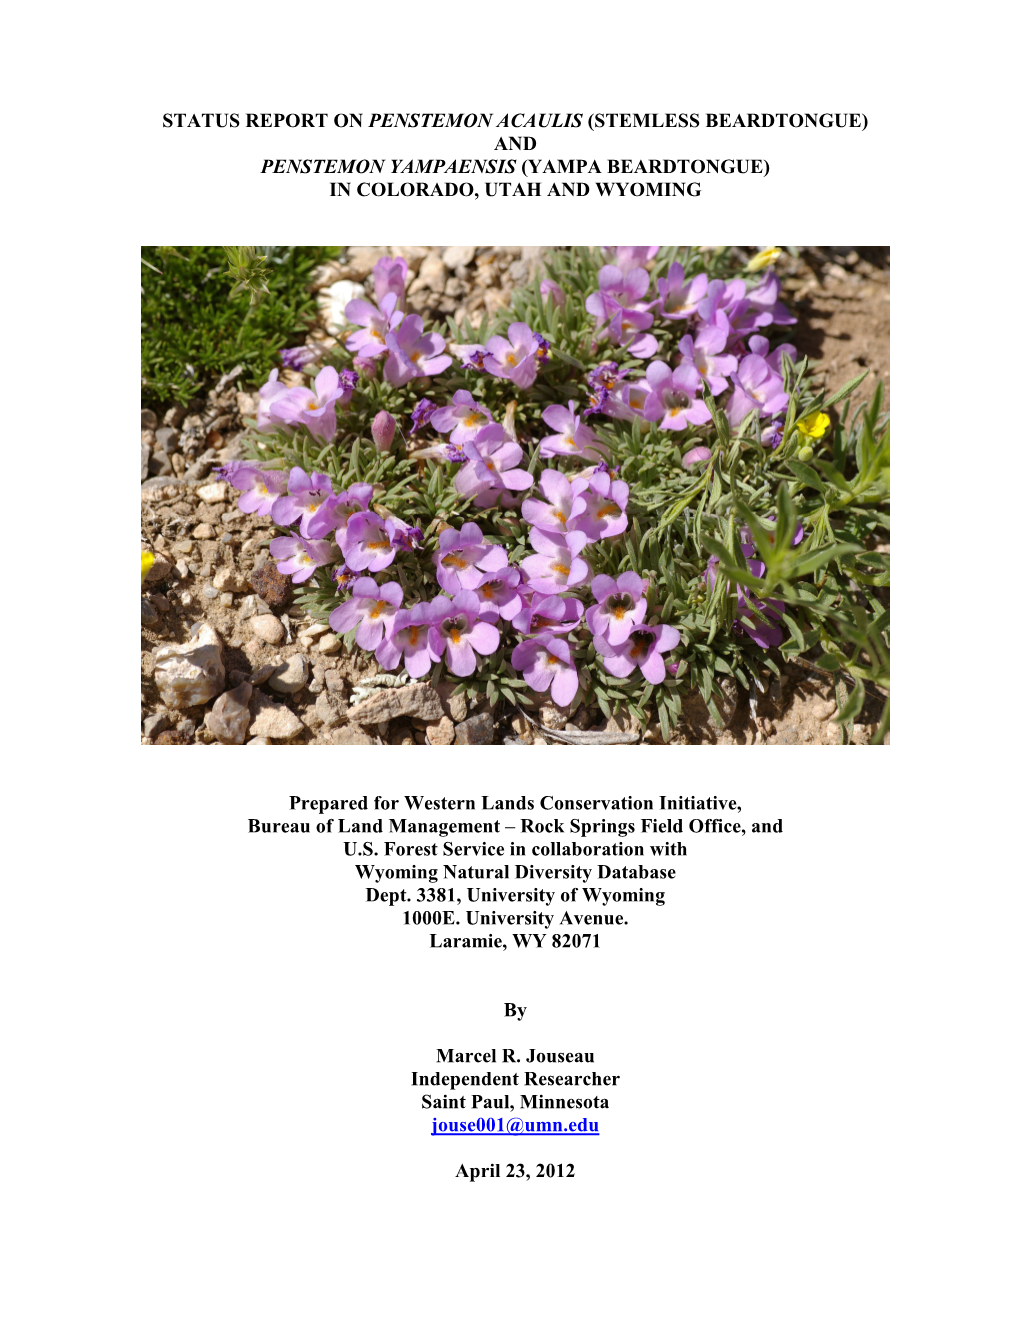 Status Report on Penstemon Acaulis (Stemless Beardtongue) and Penstemon Yampaensis (Yampa Beardtongue) in Colorado, Utah and Wyoming